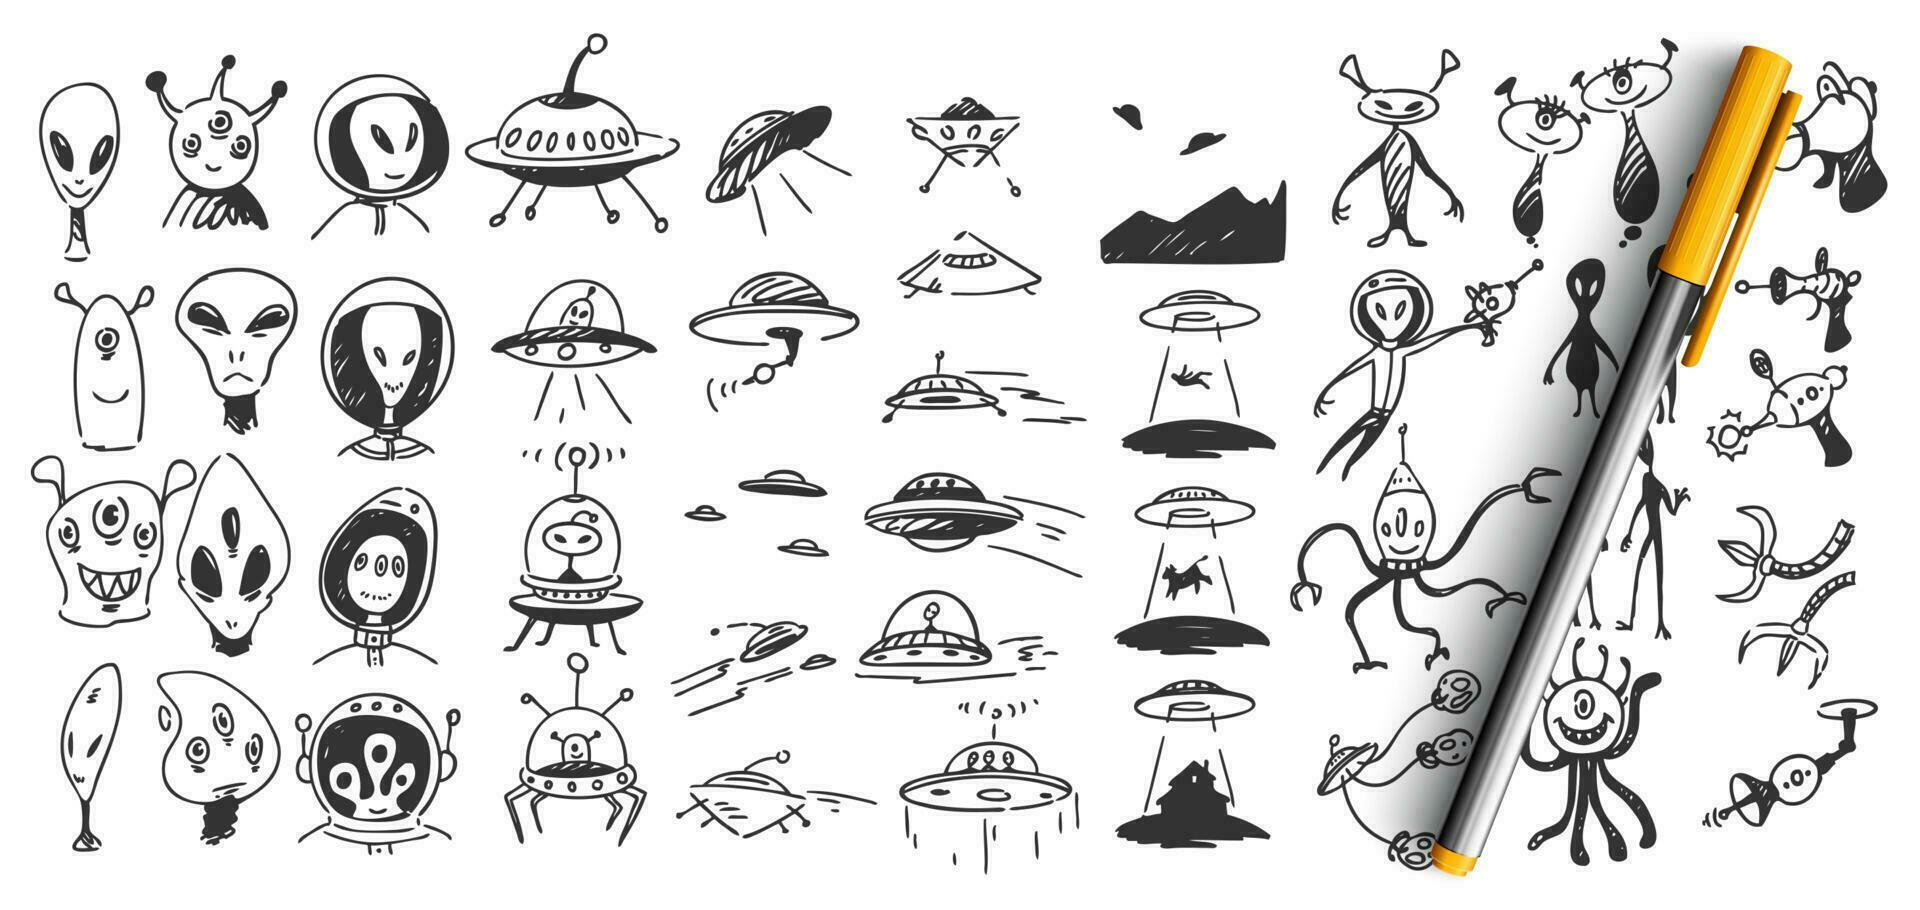 Aliens doodle set vector